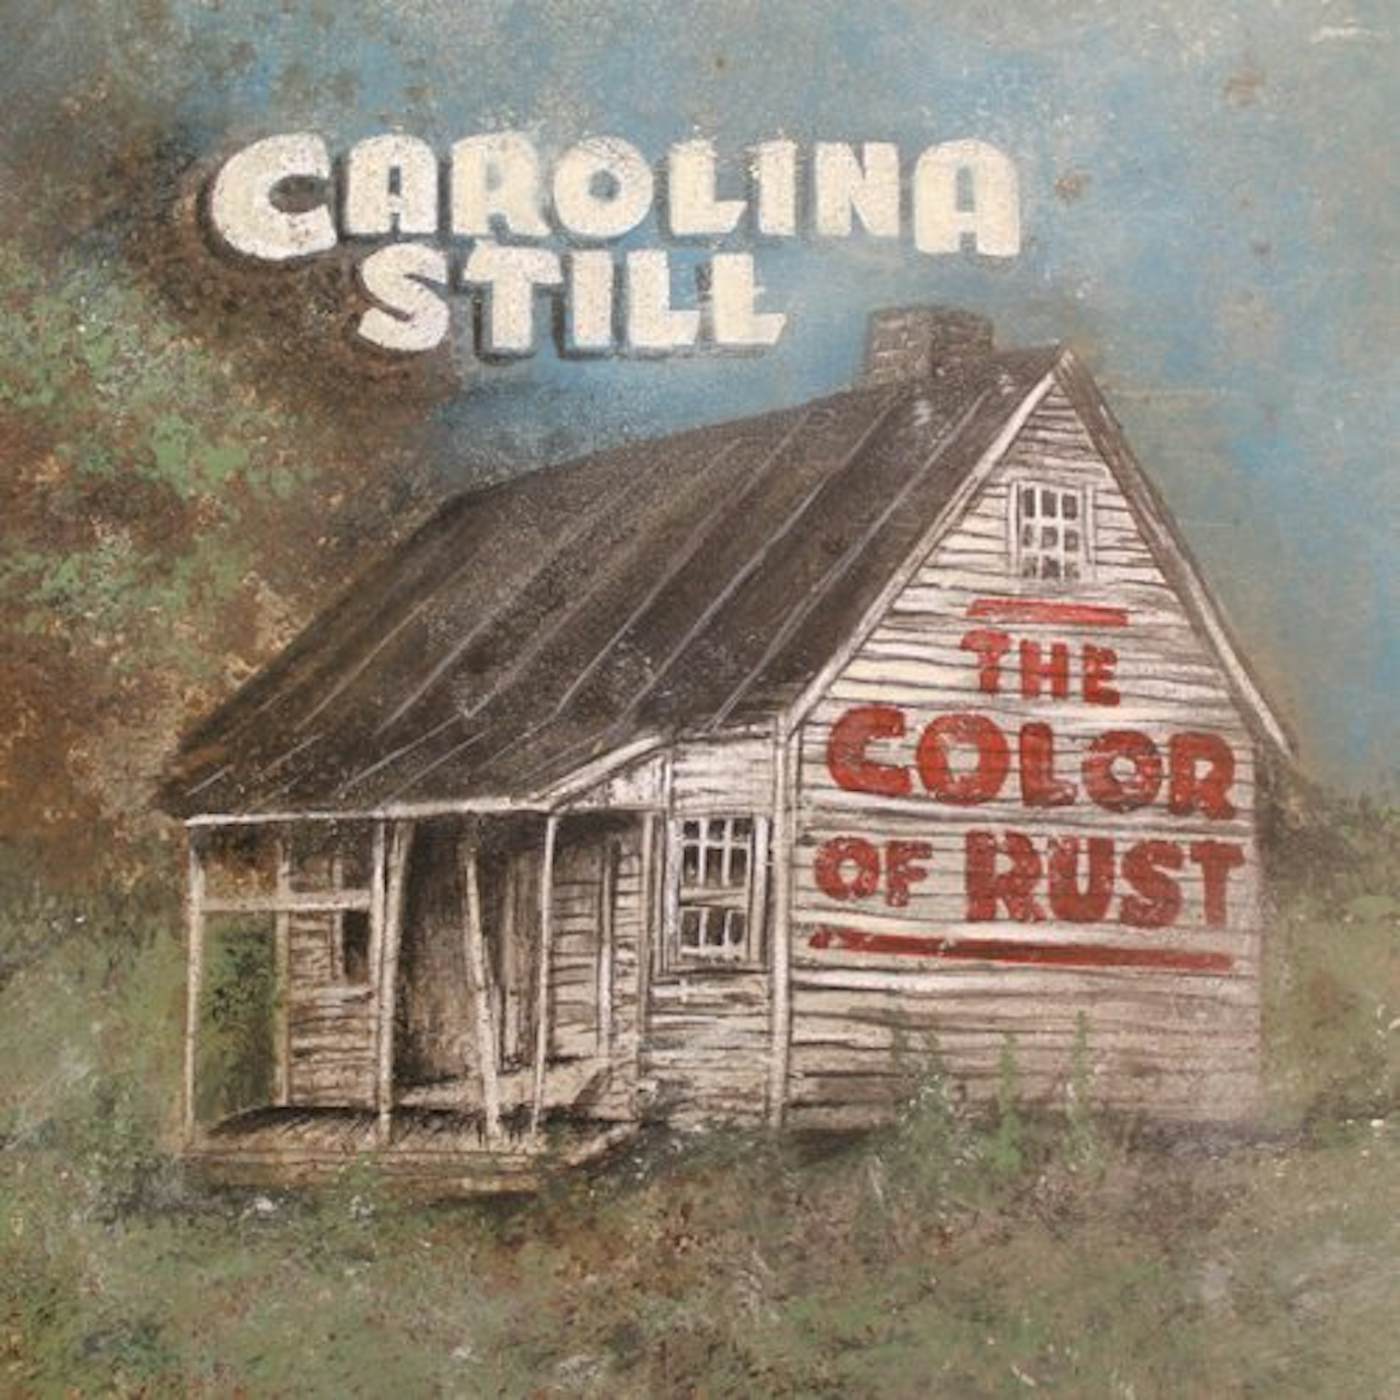 Carolina Still COLOR OF RUST CD